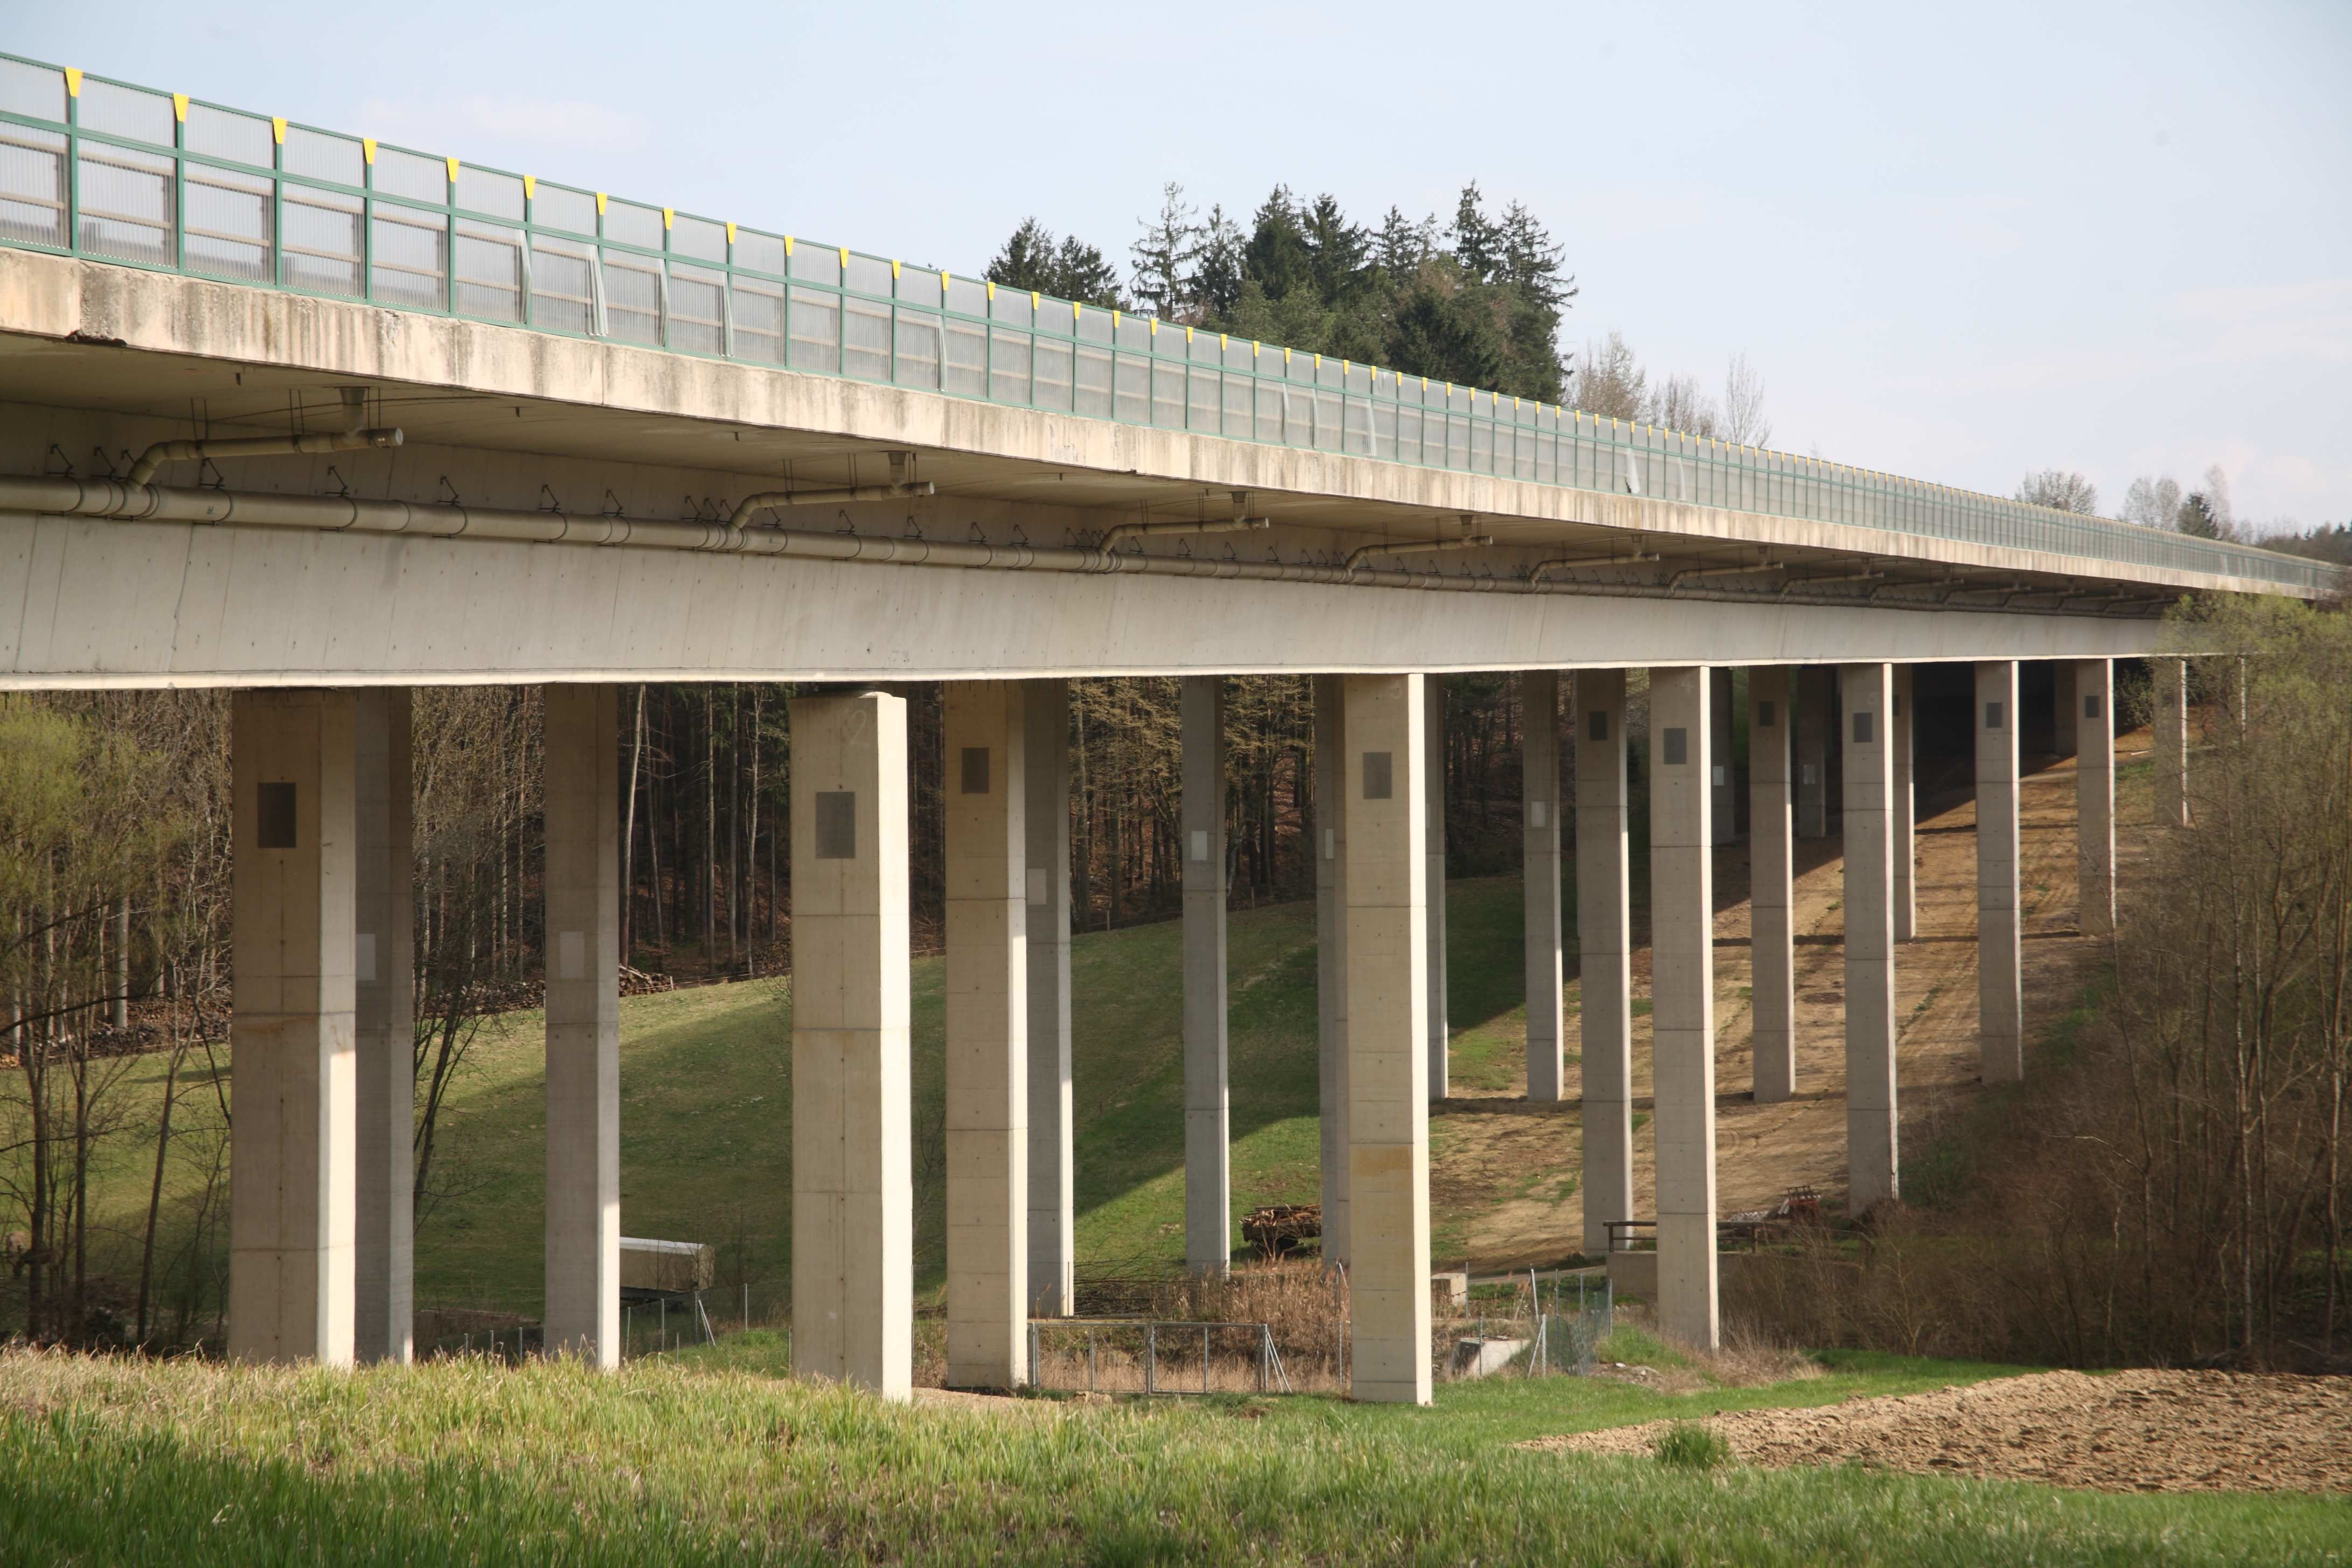 Graue Brücke für Autos mit vielen Pfeilern